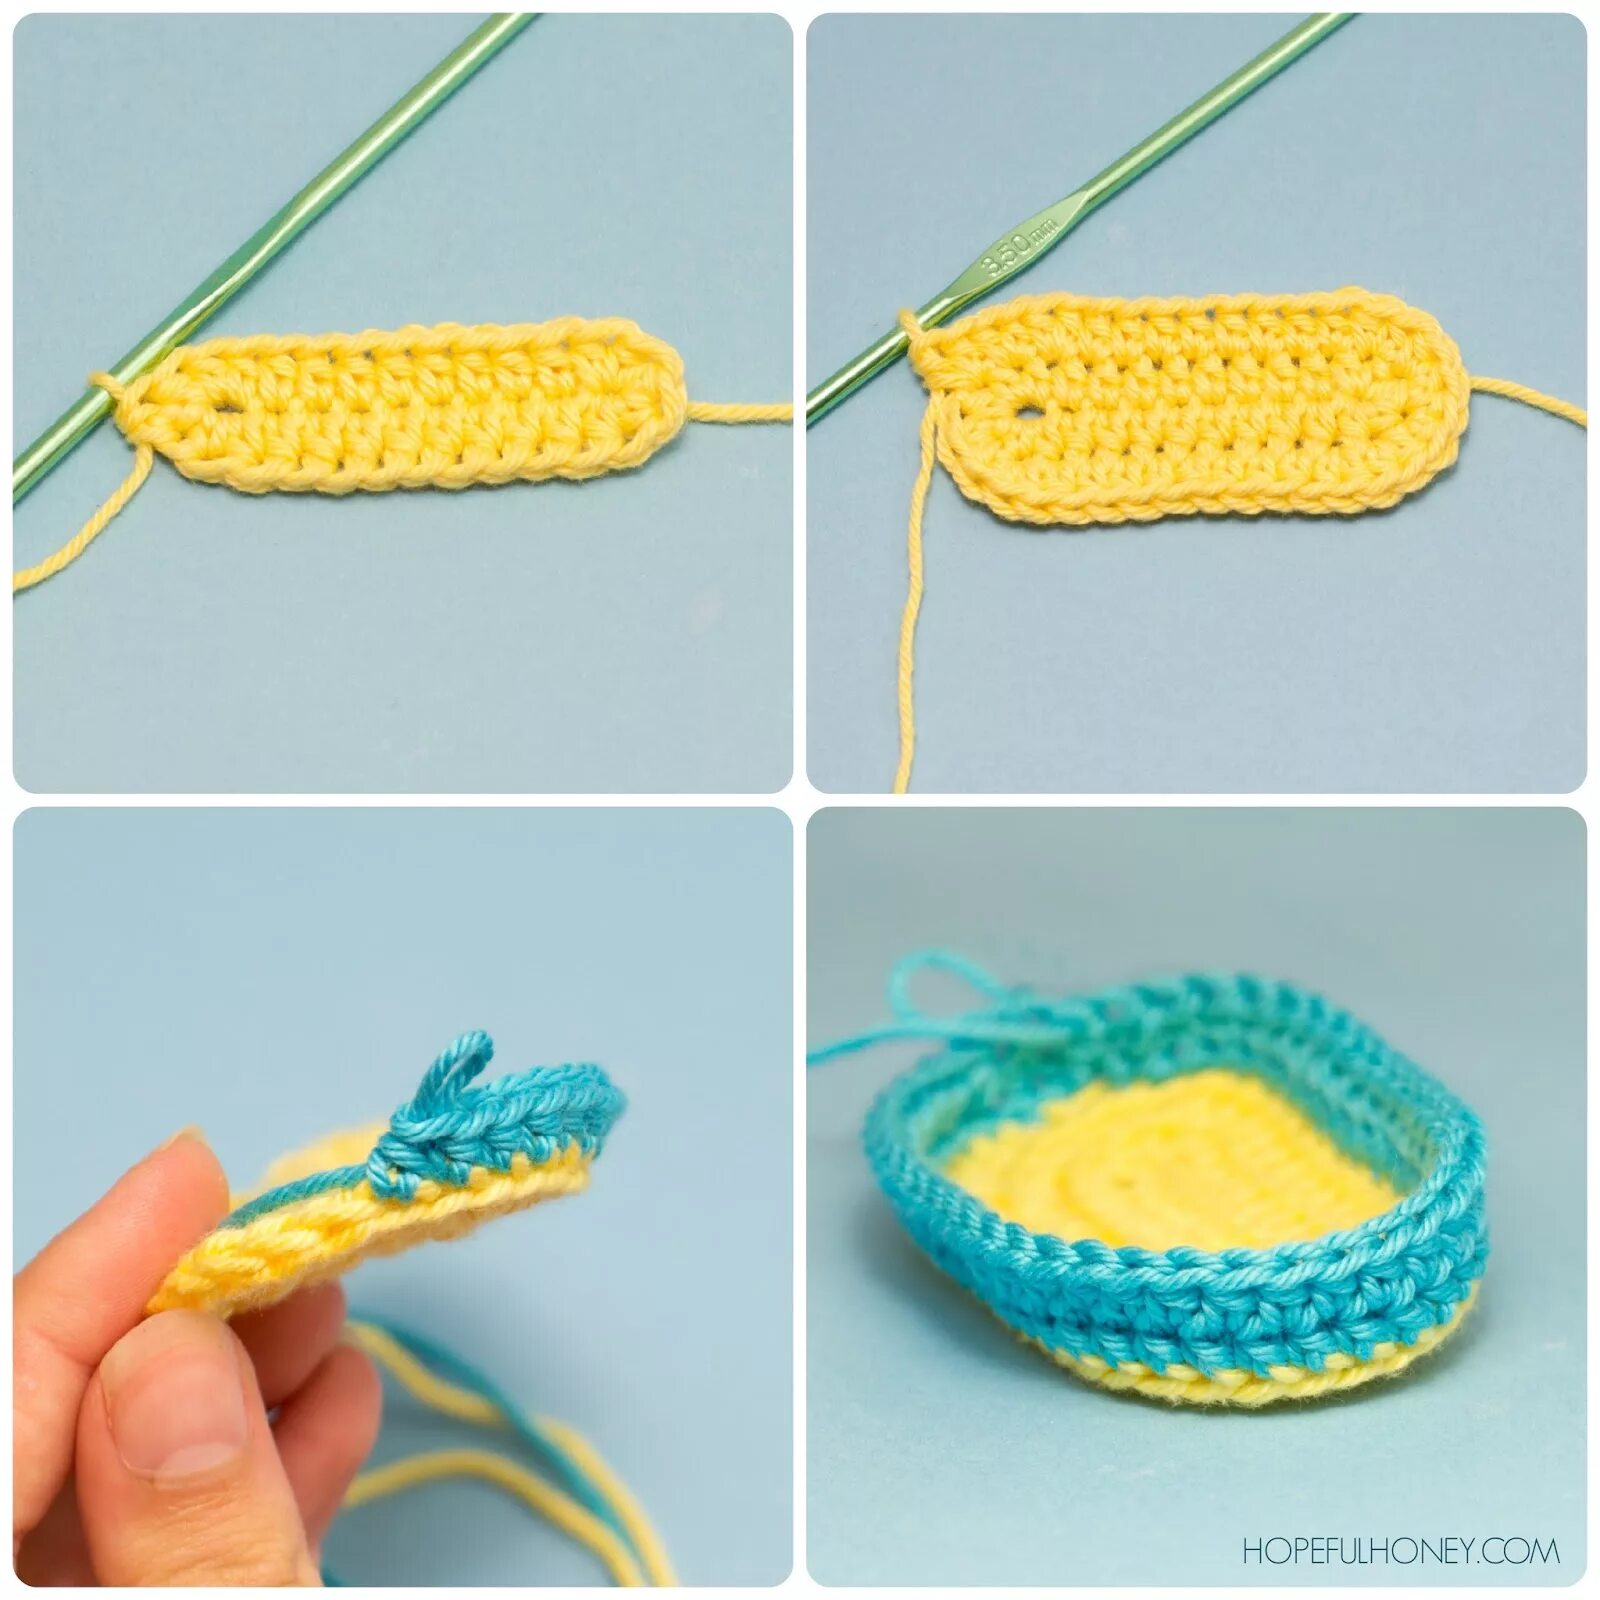 Связать что то легкое. Самое легкое вязание крючком. Поделки крючком для начинающих. Вязание крючком для начинающих самые простые изделия. Крючком для начинающих детям.